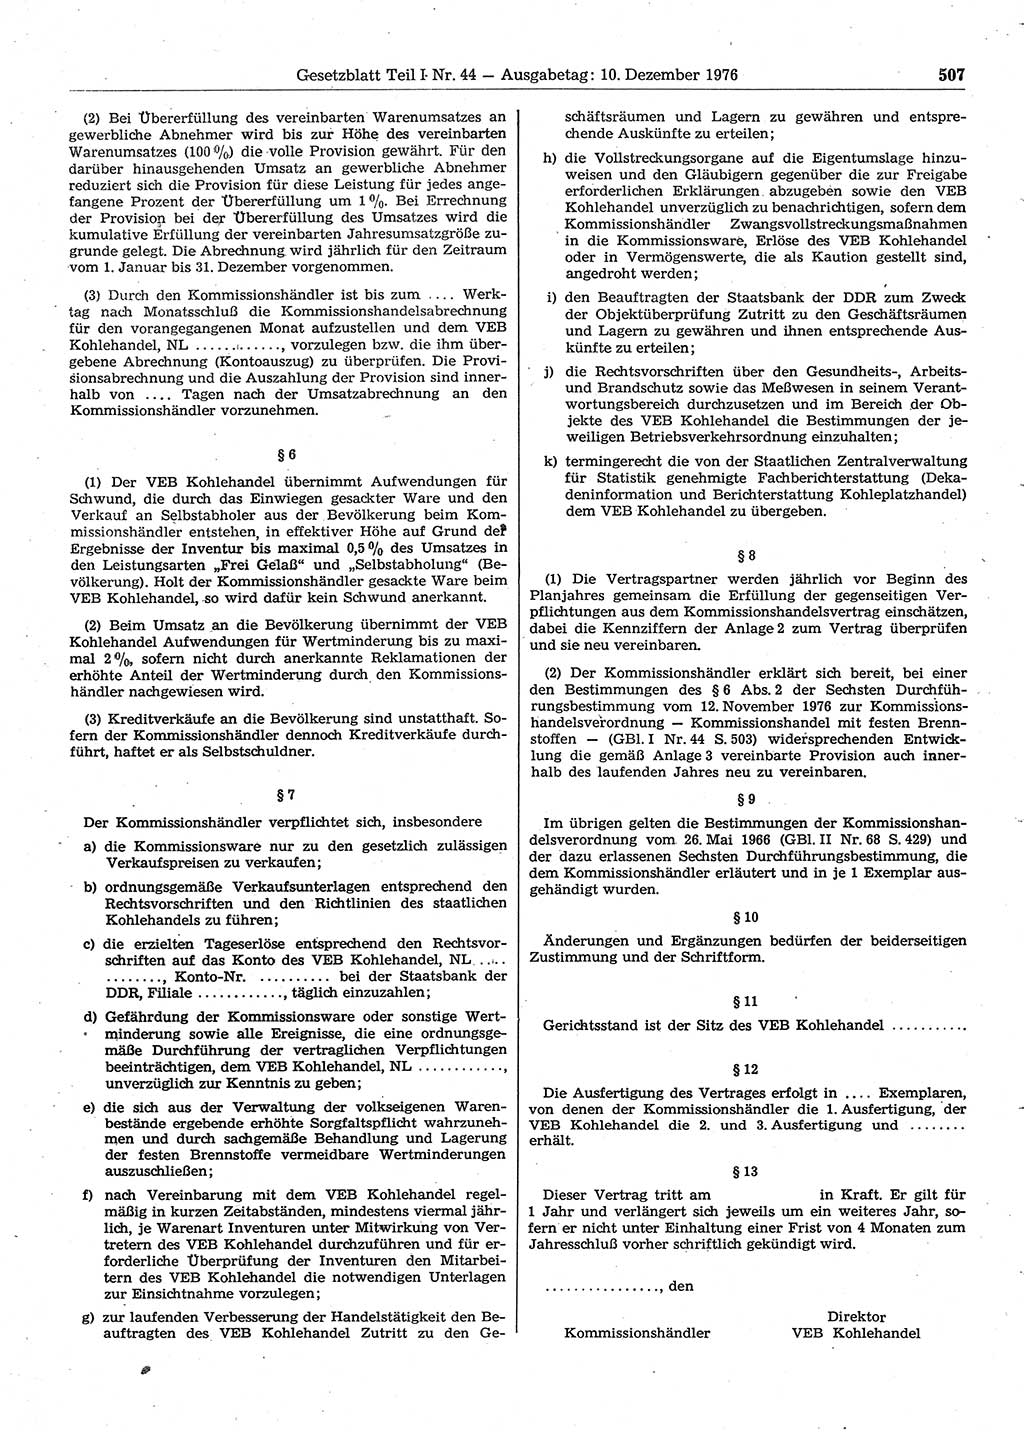 Gesetzblatt (GBl.) der Deutschen Demokratischen Republik (DDR) Teil Ⅰ 1976, Seite 507 (GBl. DDR Ⅰ 1976, S. 507)